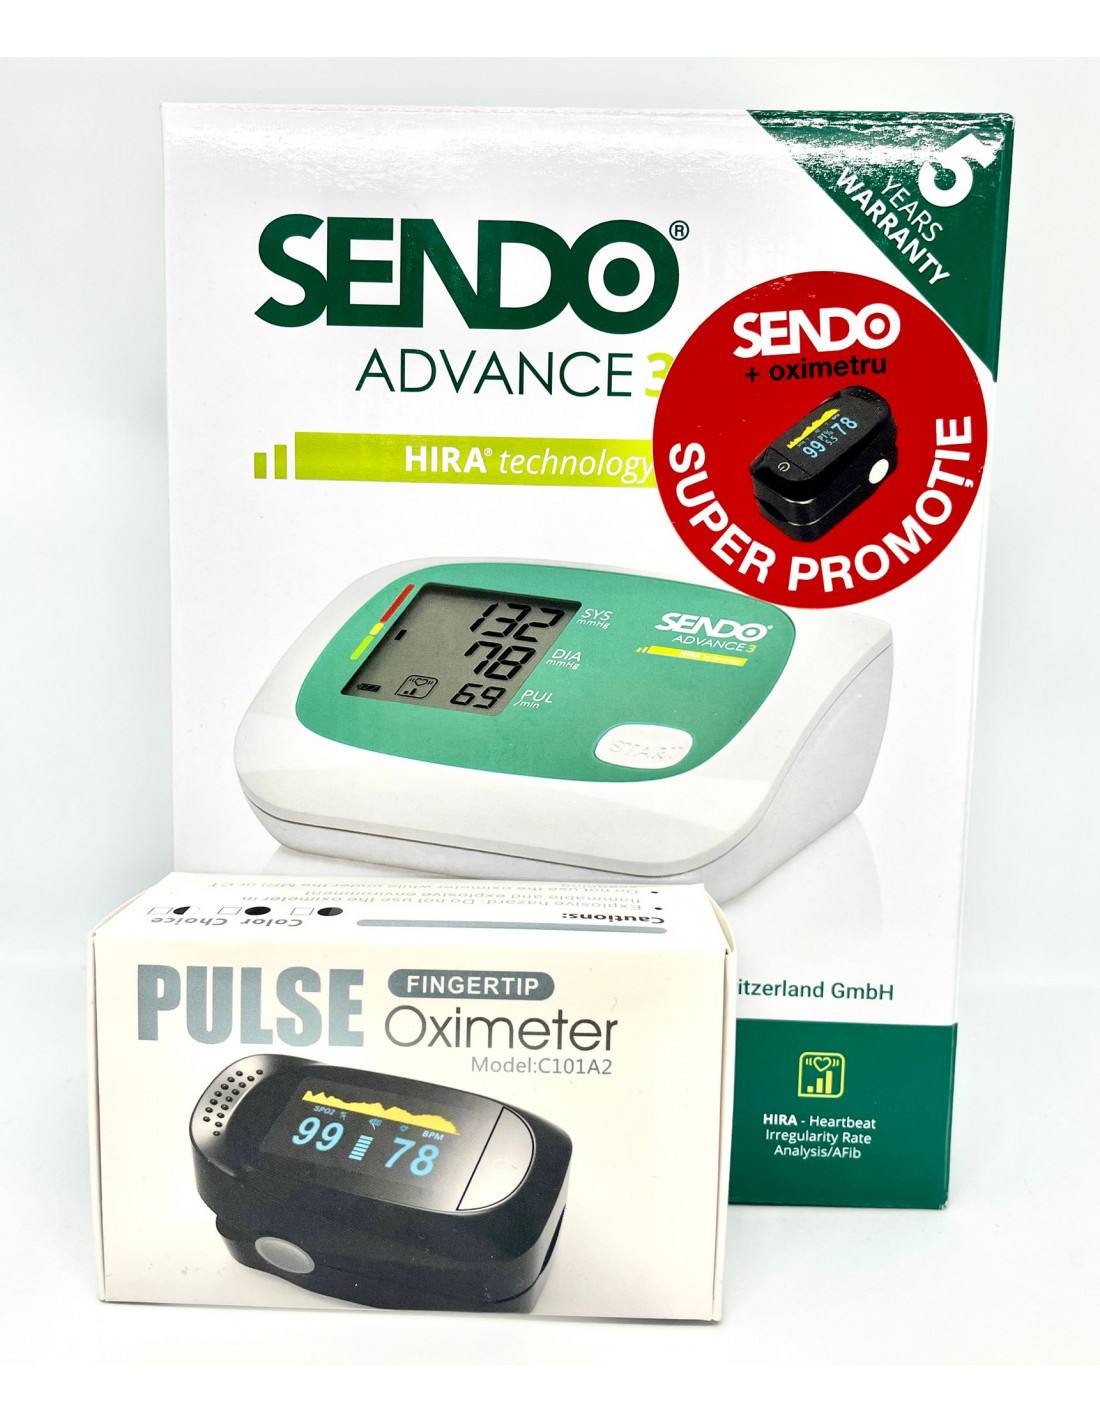 Tensiometru Sendo Advance 3 + Pulsoximetru - TENSIOMETRE - SENDO